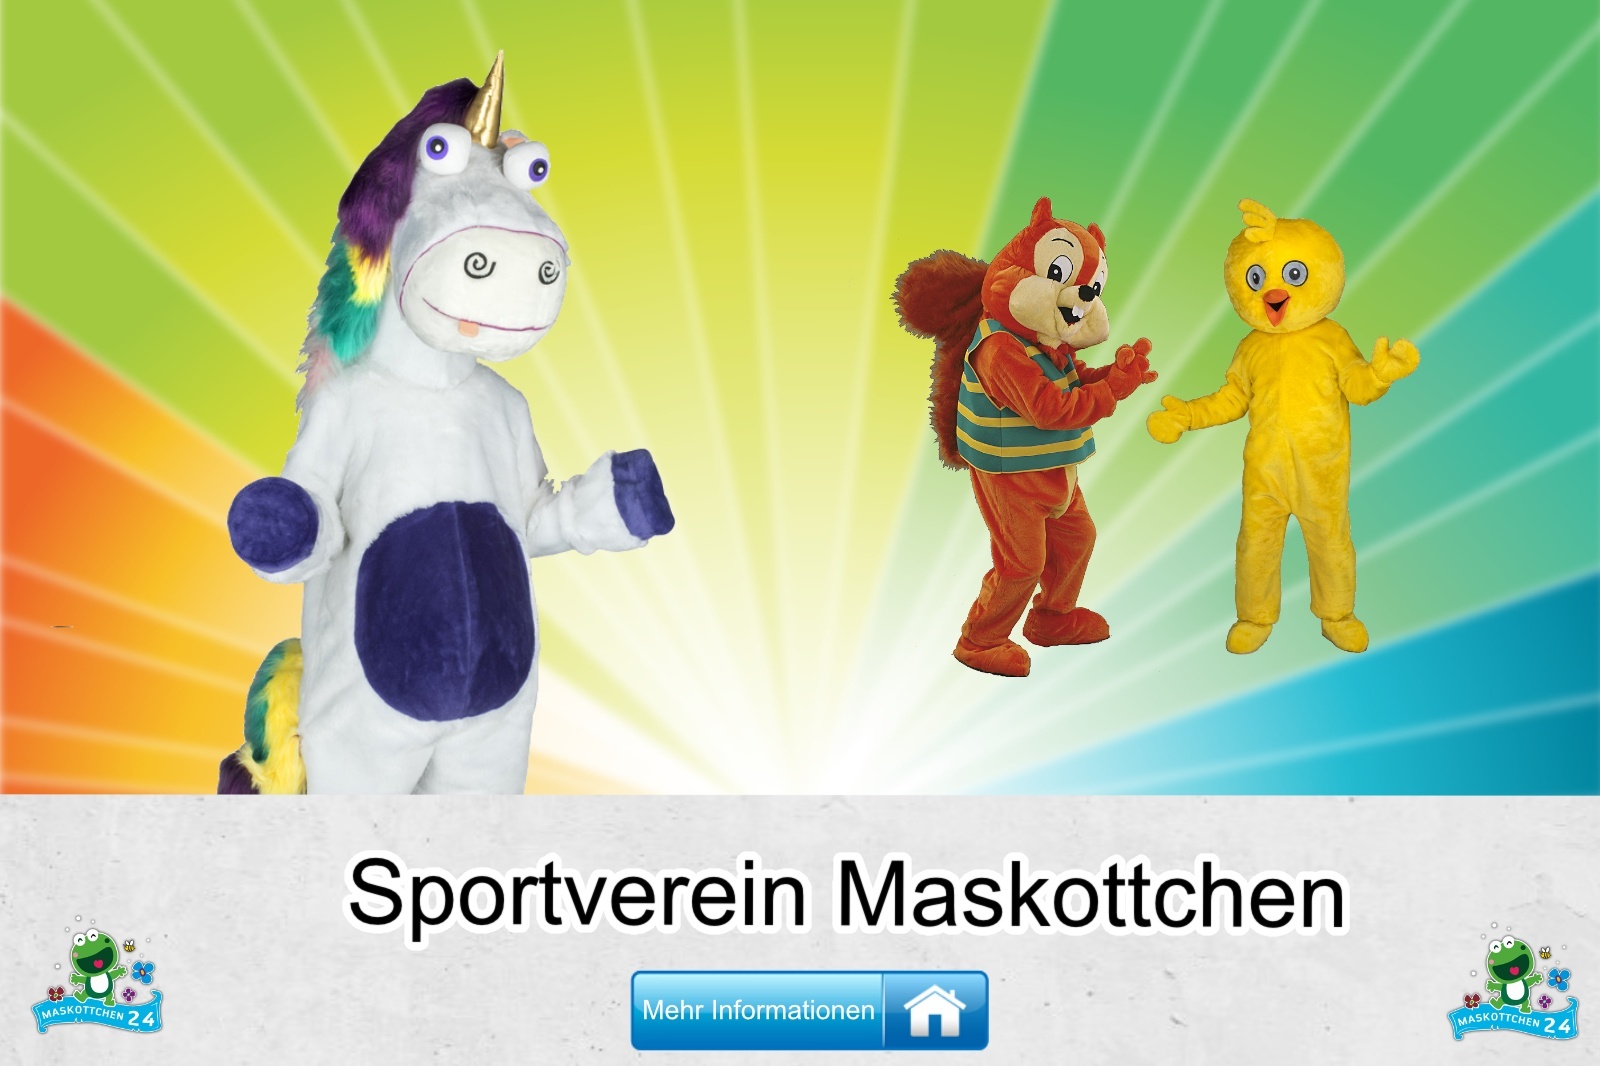 Sportverein-Kostuem-Maskottchen-Guenstig-Kaufen-Produktion